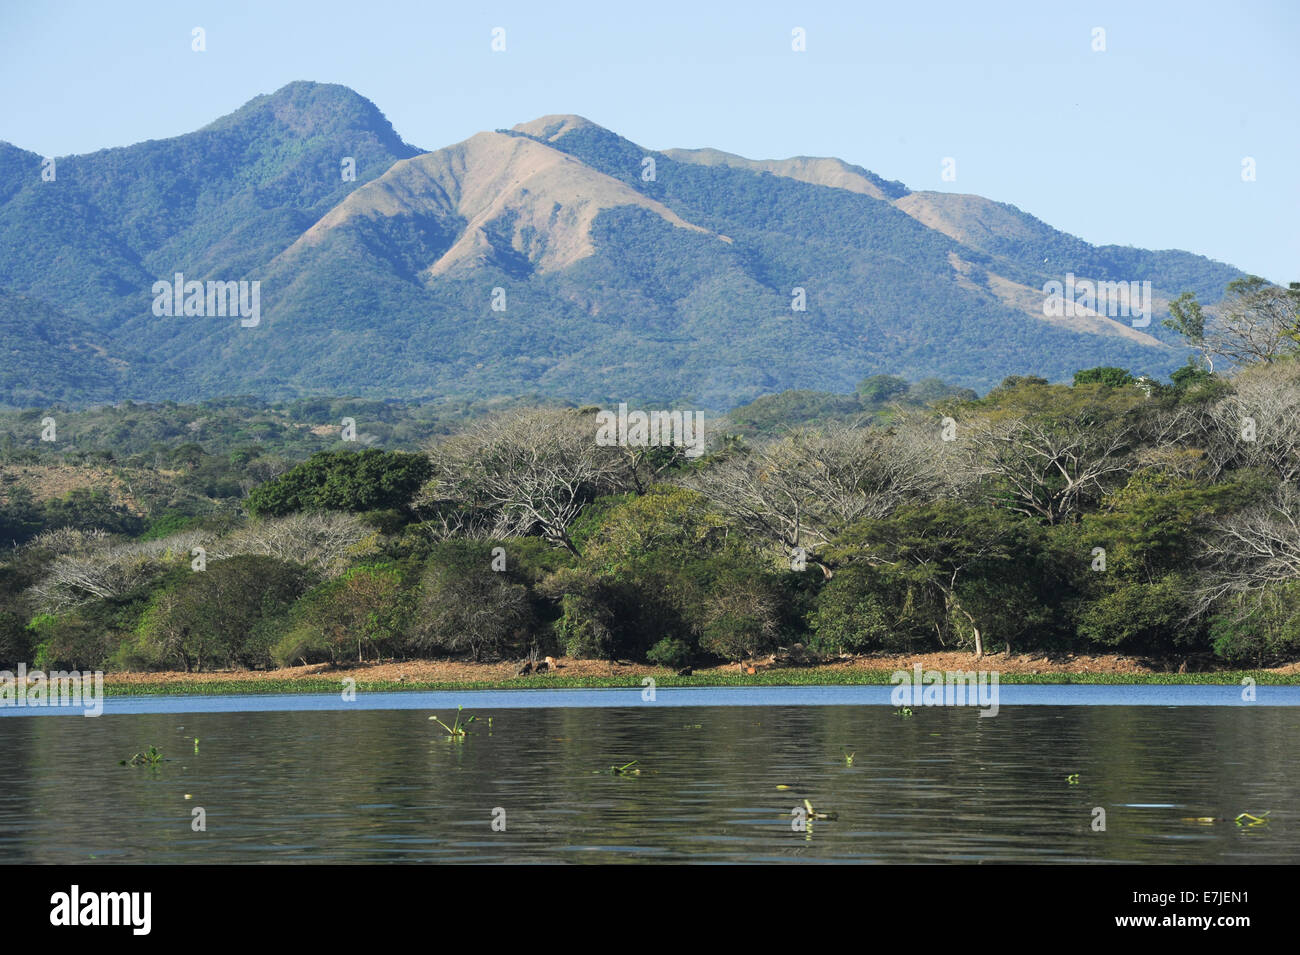 Central America, Guasapa, Suchitlan, Suchitoto, America, boat, el Salvador, island, lake, mountains, nature Stock Photo